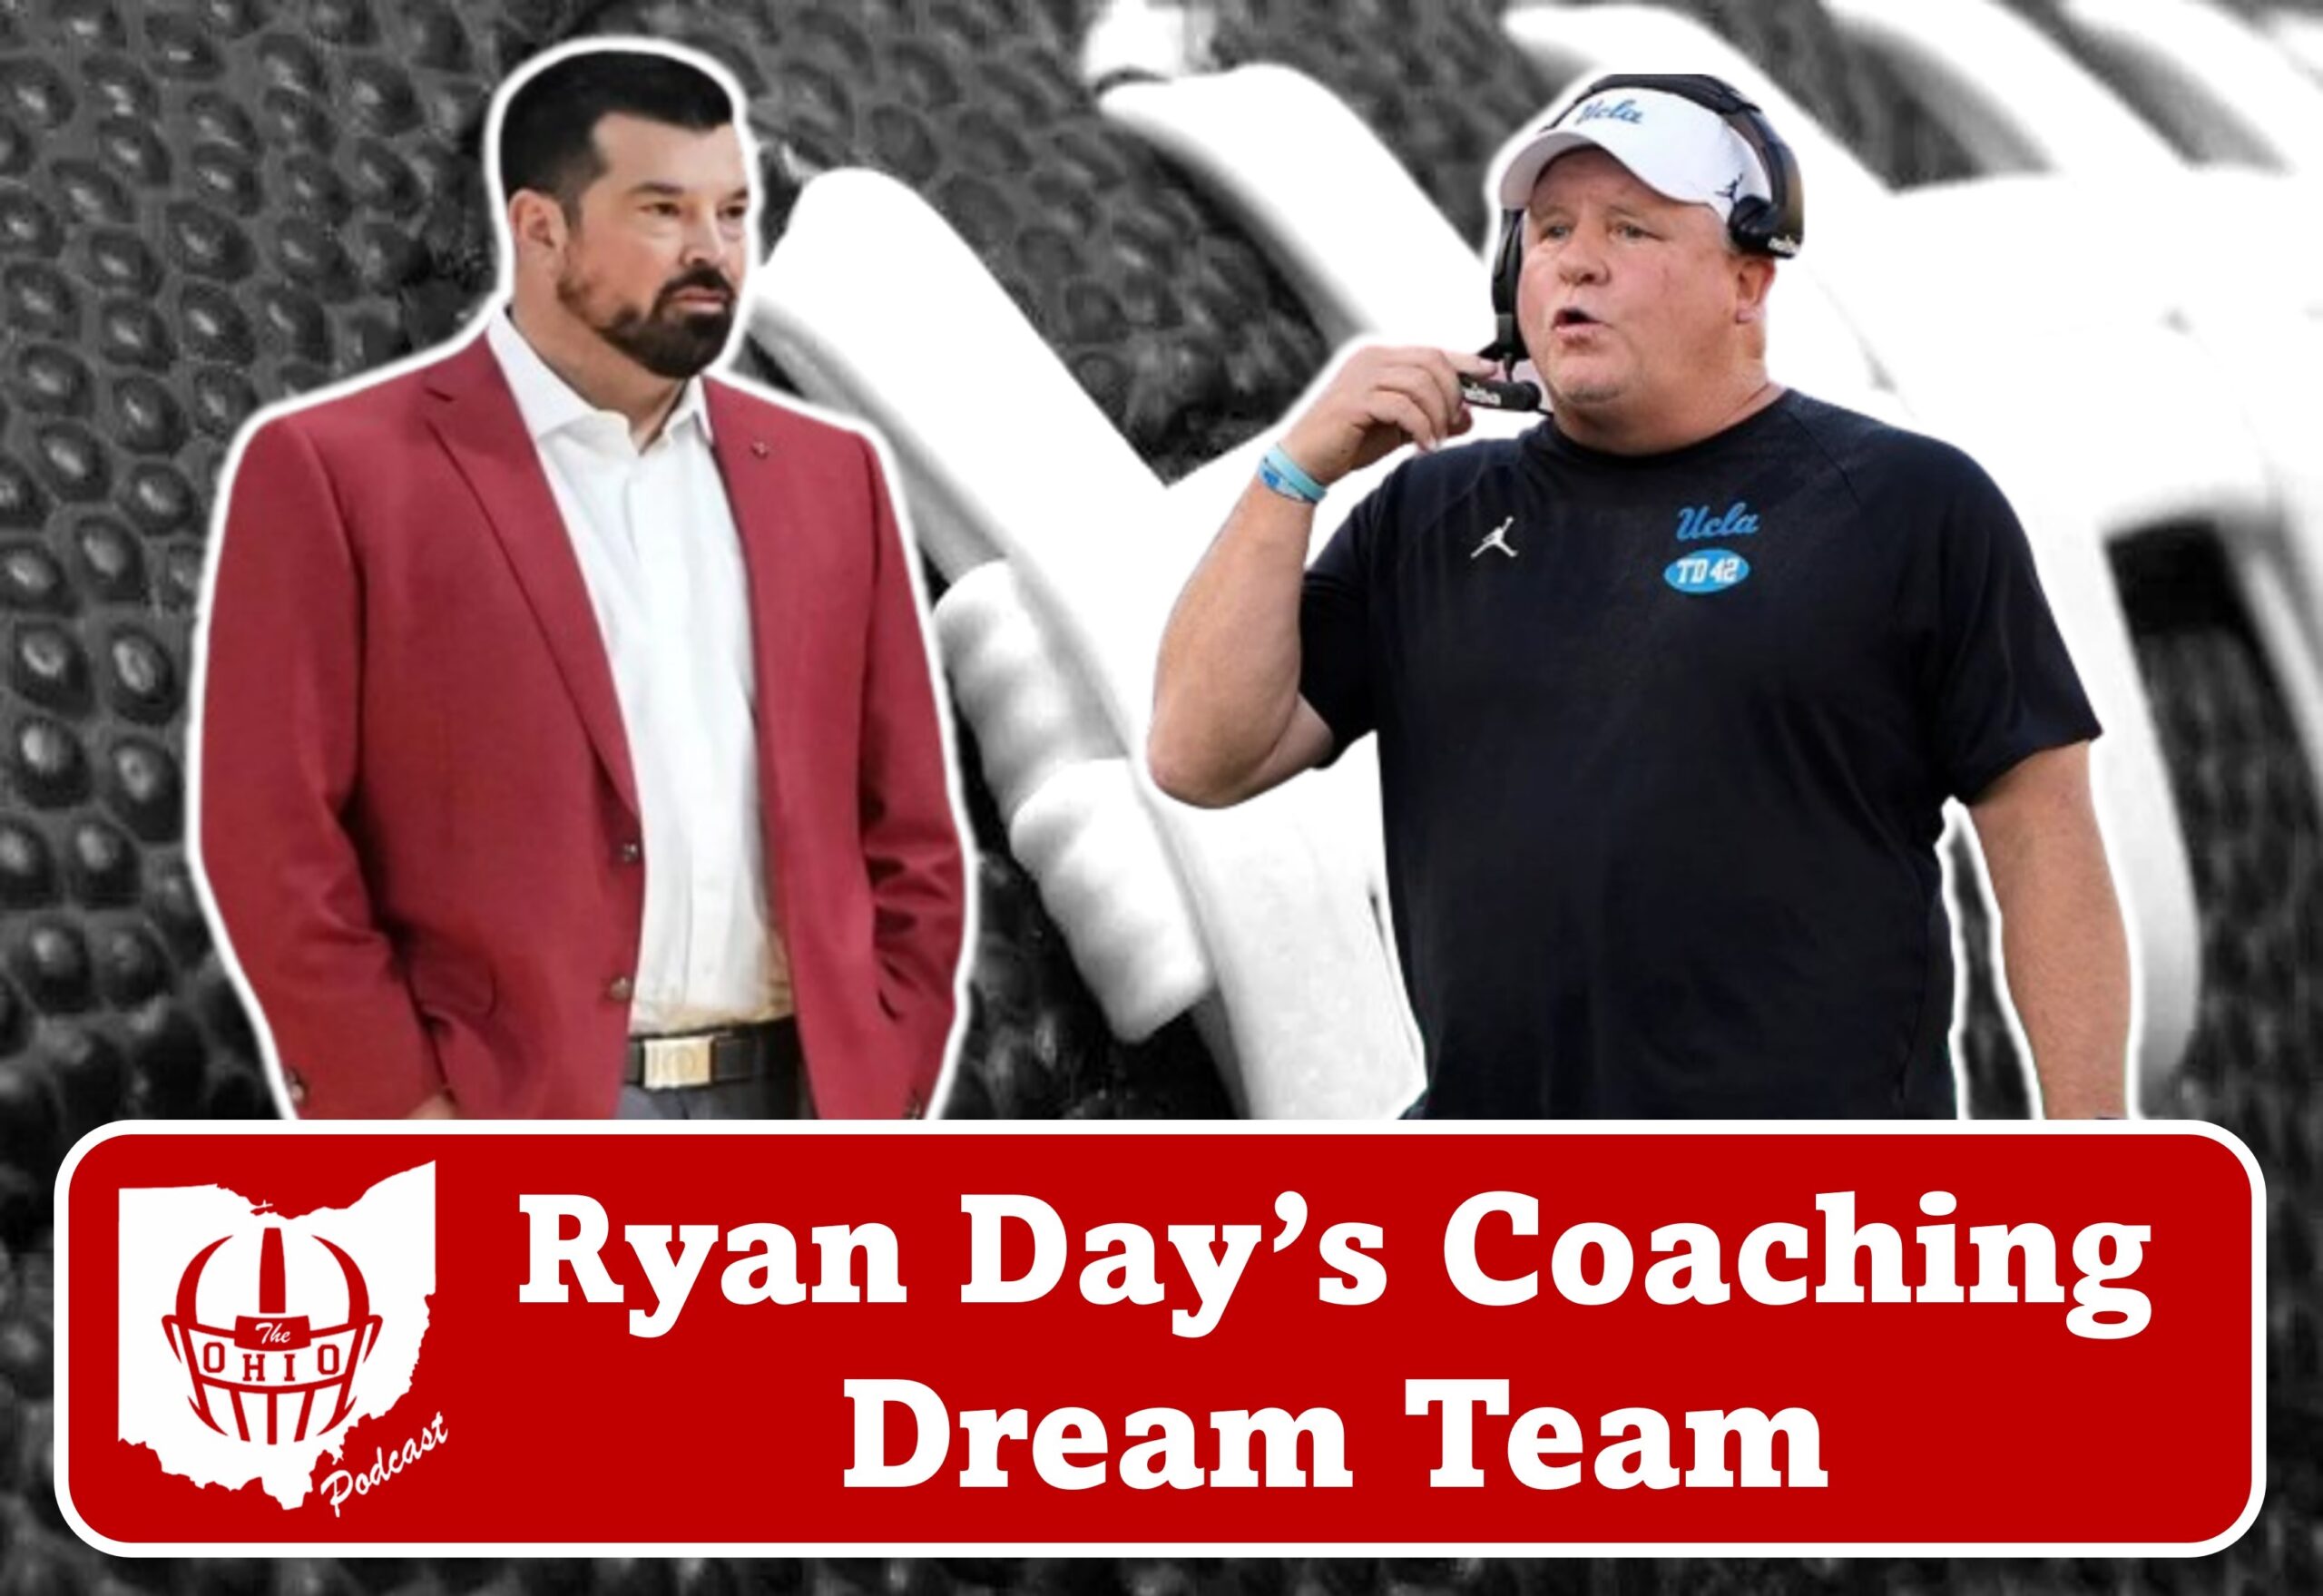 Ryan Day's Coaching Dream Team